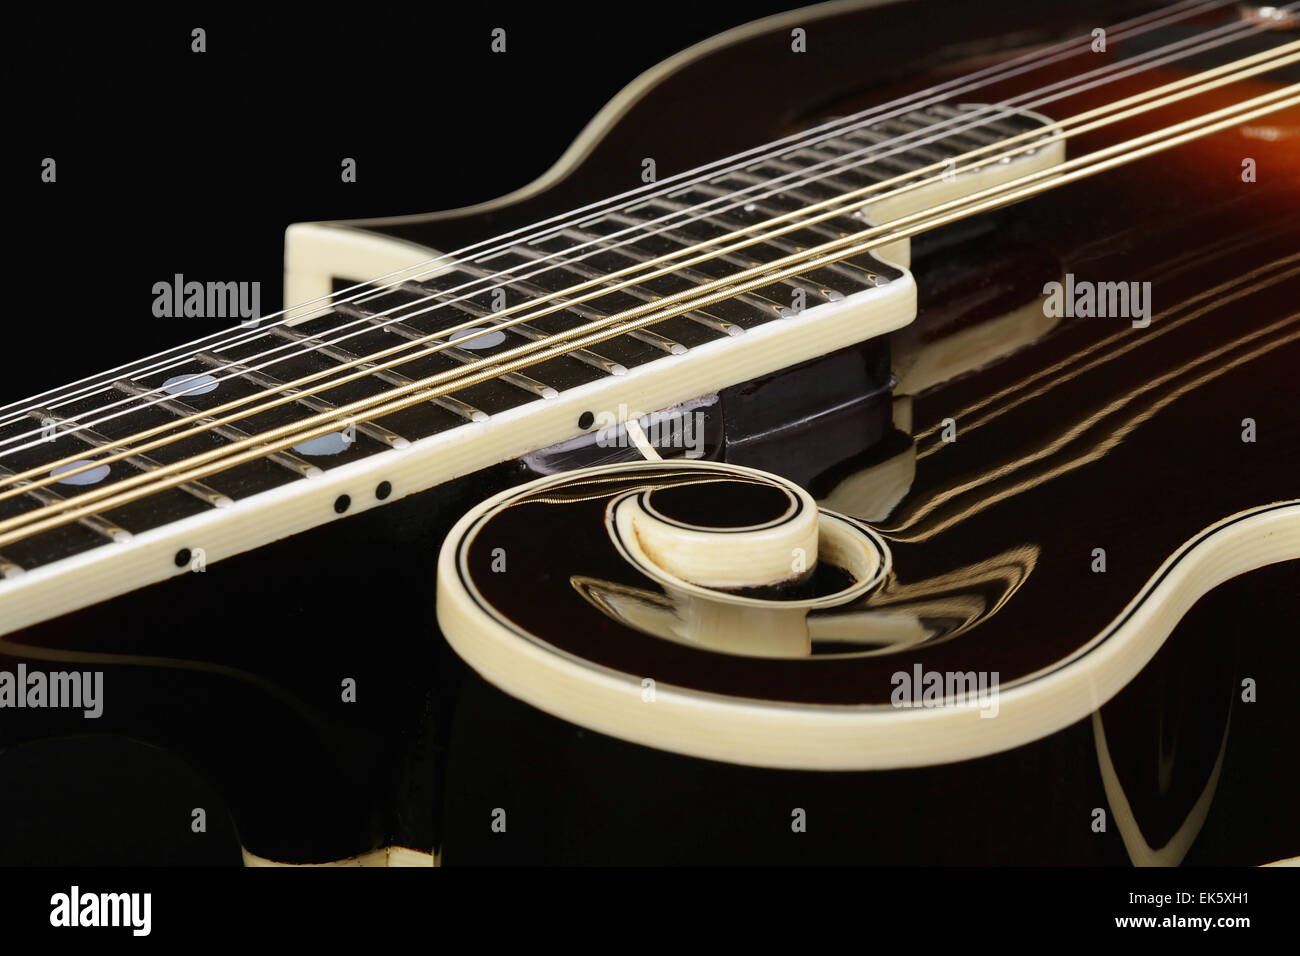 Mandolin isolated on black background Stock Photo